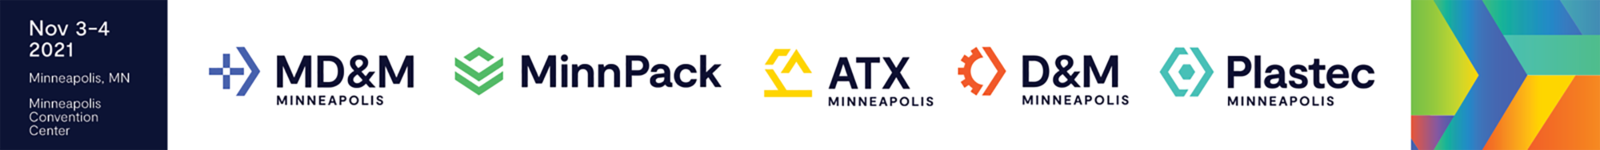 Minneapolis 2021 logo